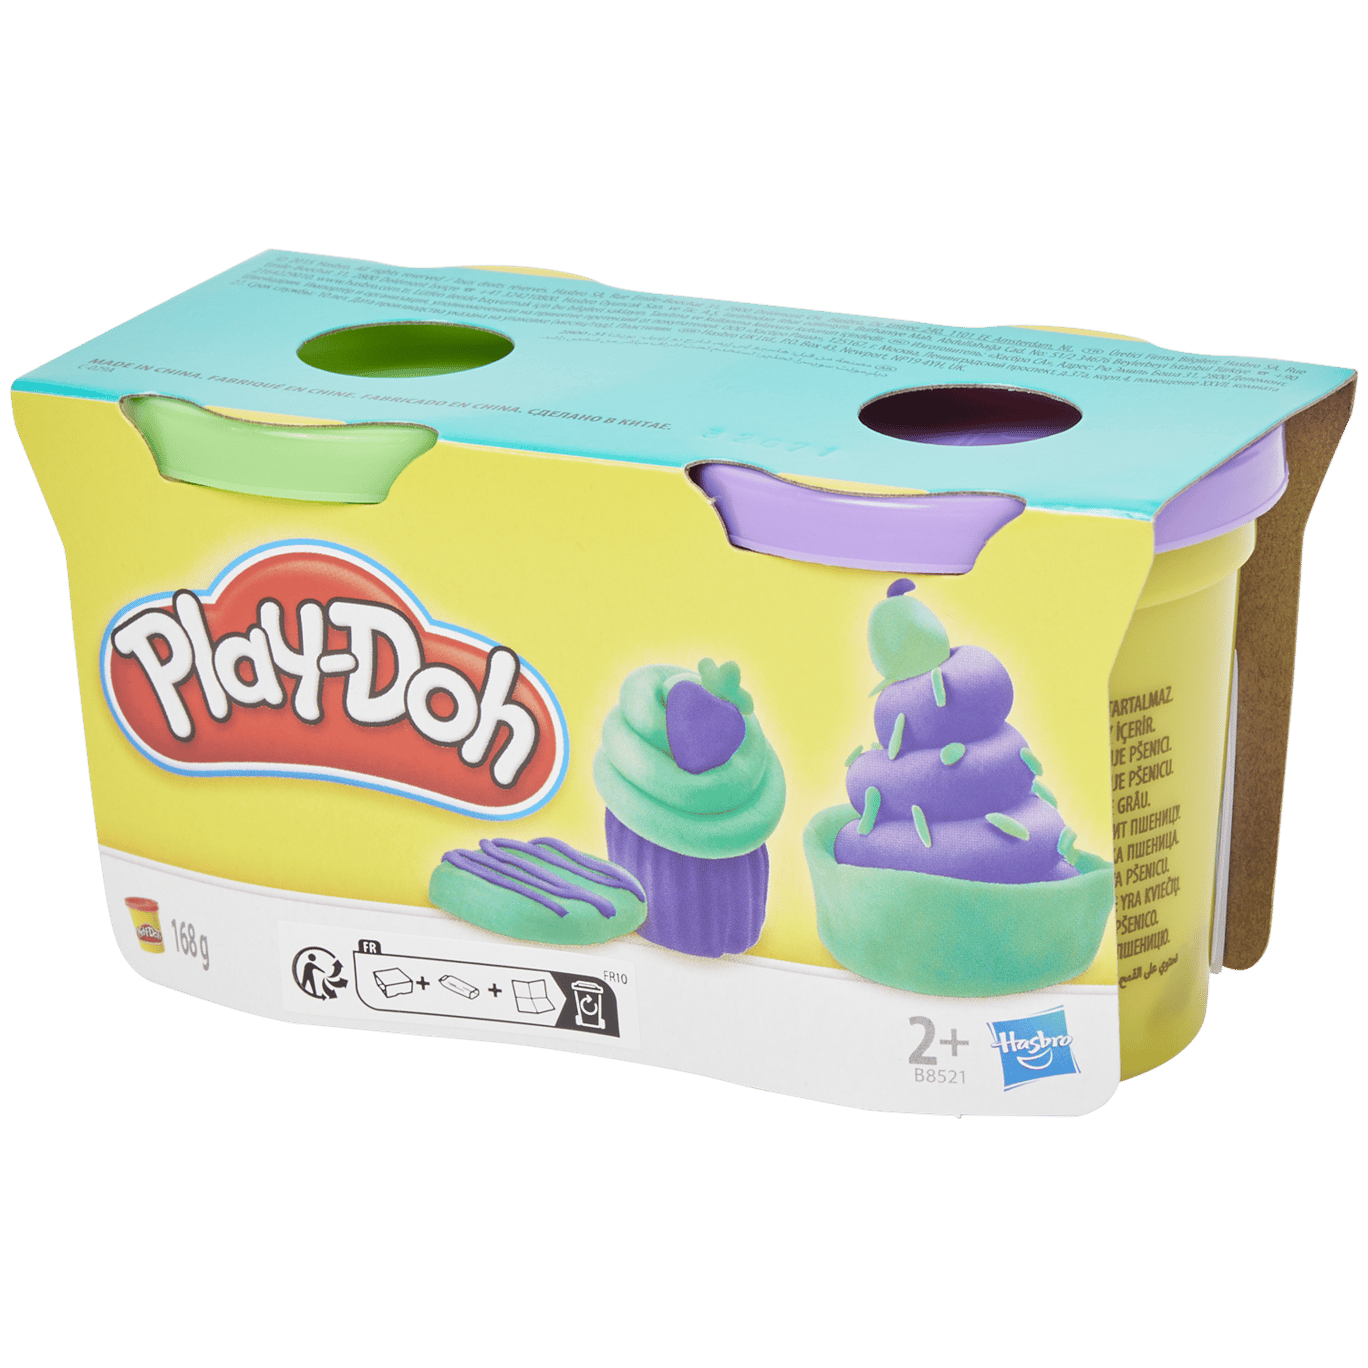 Play-Doh Play-Doh pâte à modeler